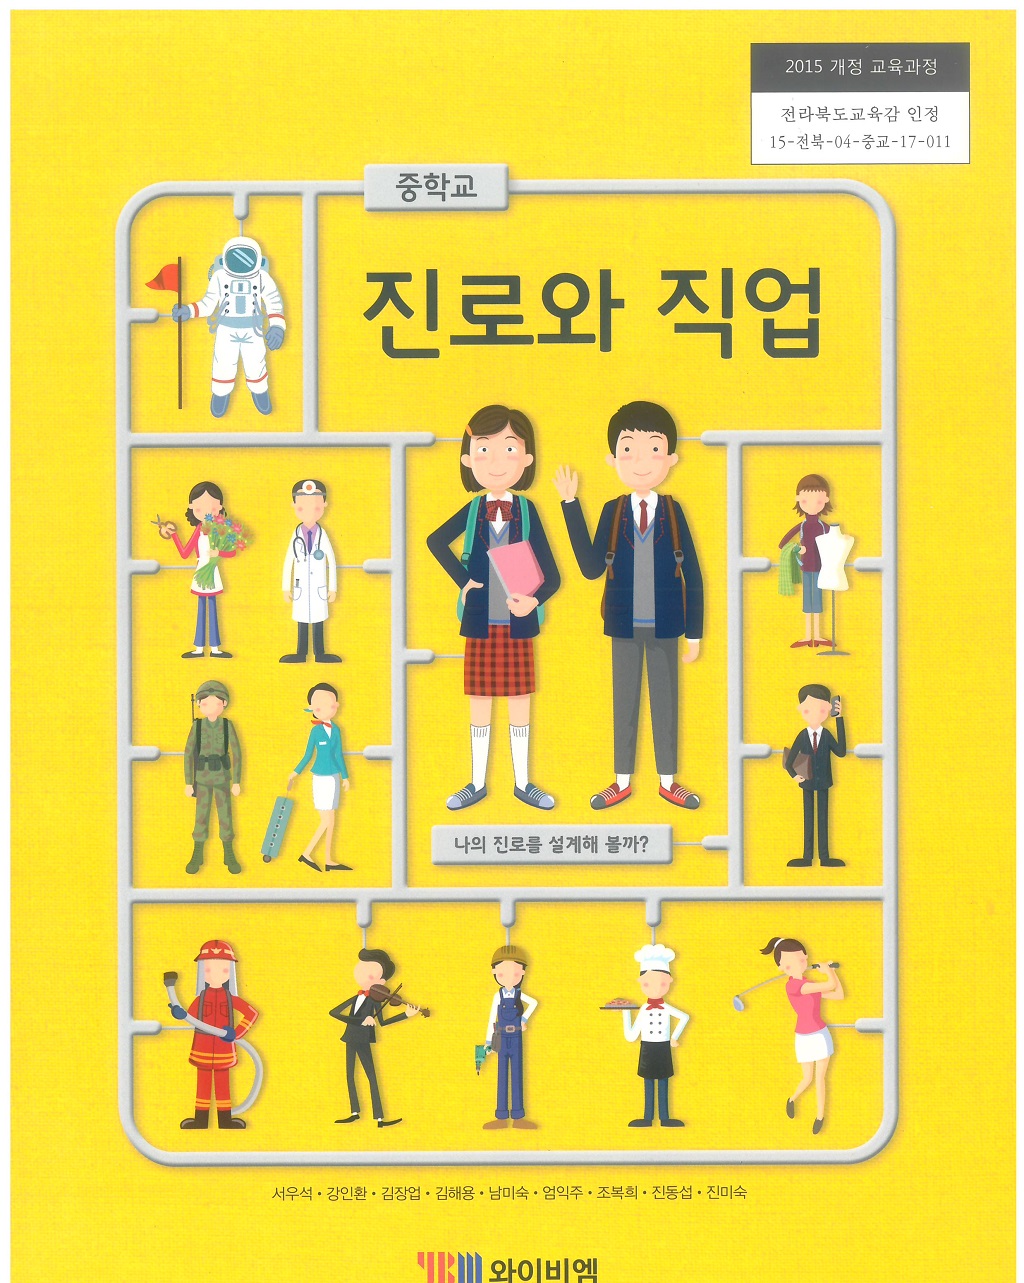 중학교 진로와 직업 교과서 (와이비엠-서우석)